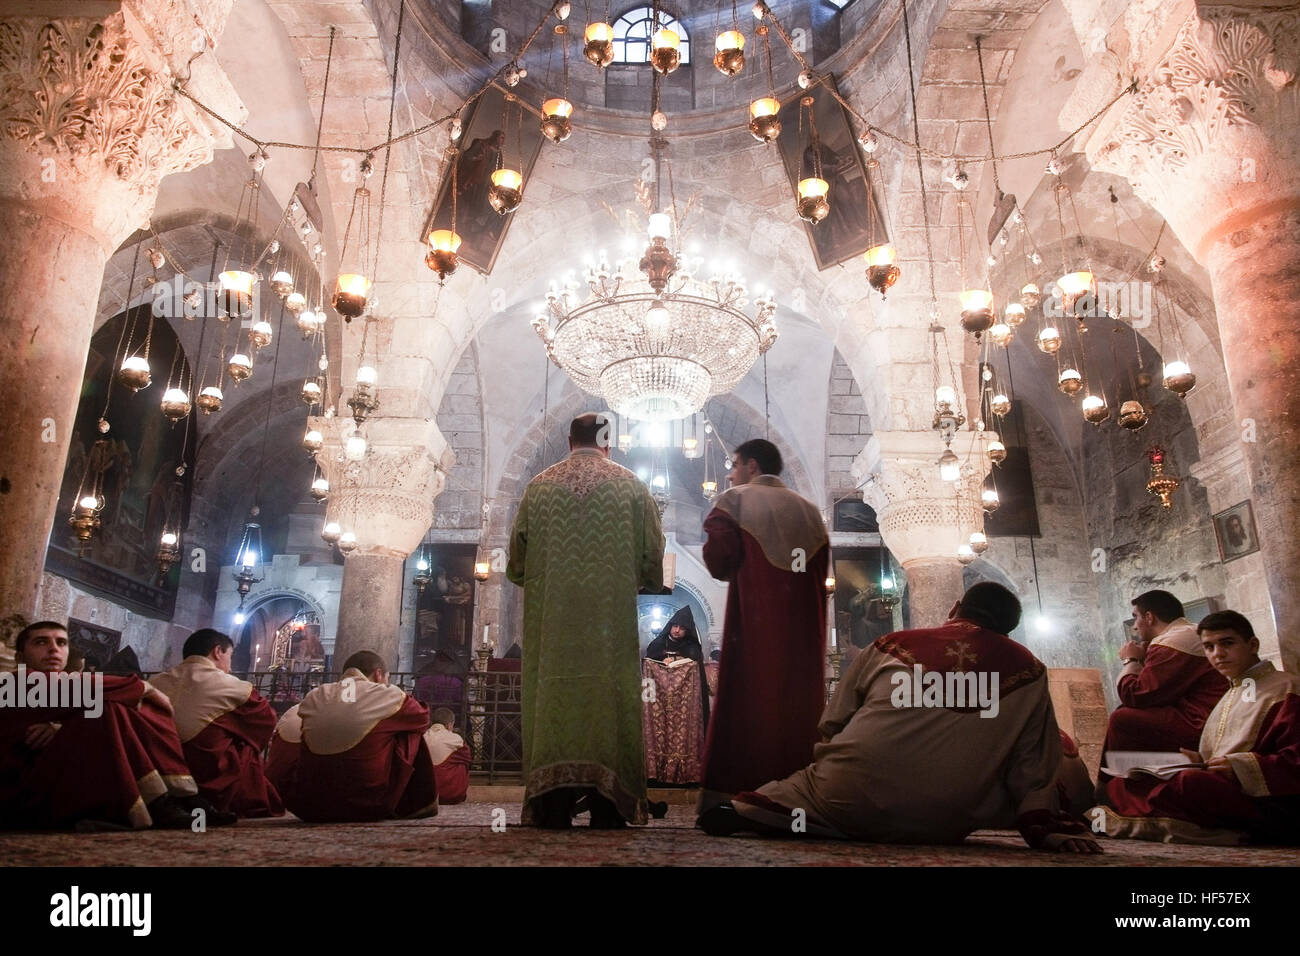 Jérusalem, vers 2014. Le clergé de l'Eglise apostolique arménienne dans le Saint Sépulcre célèbre la messe. Banque D'Images